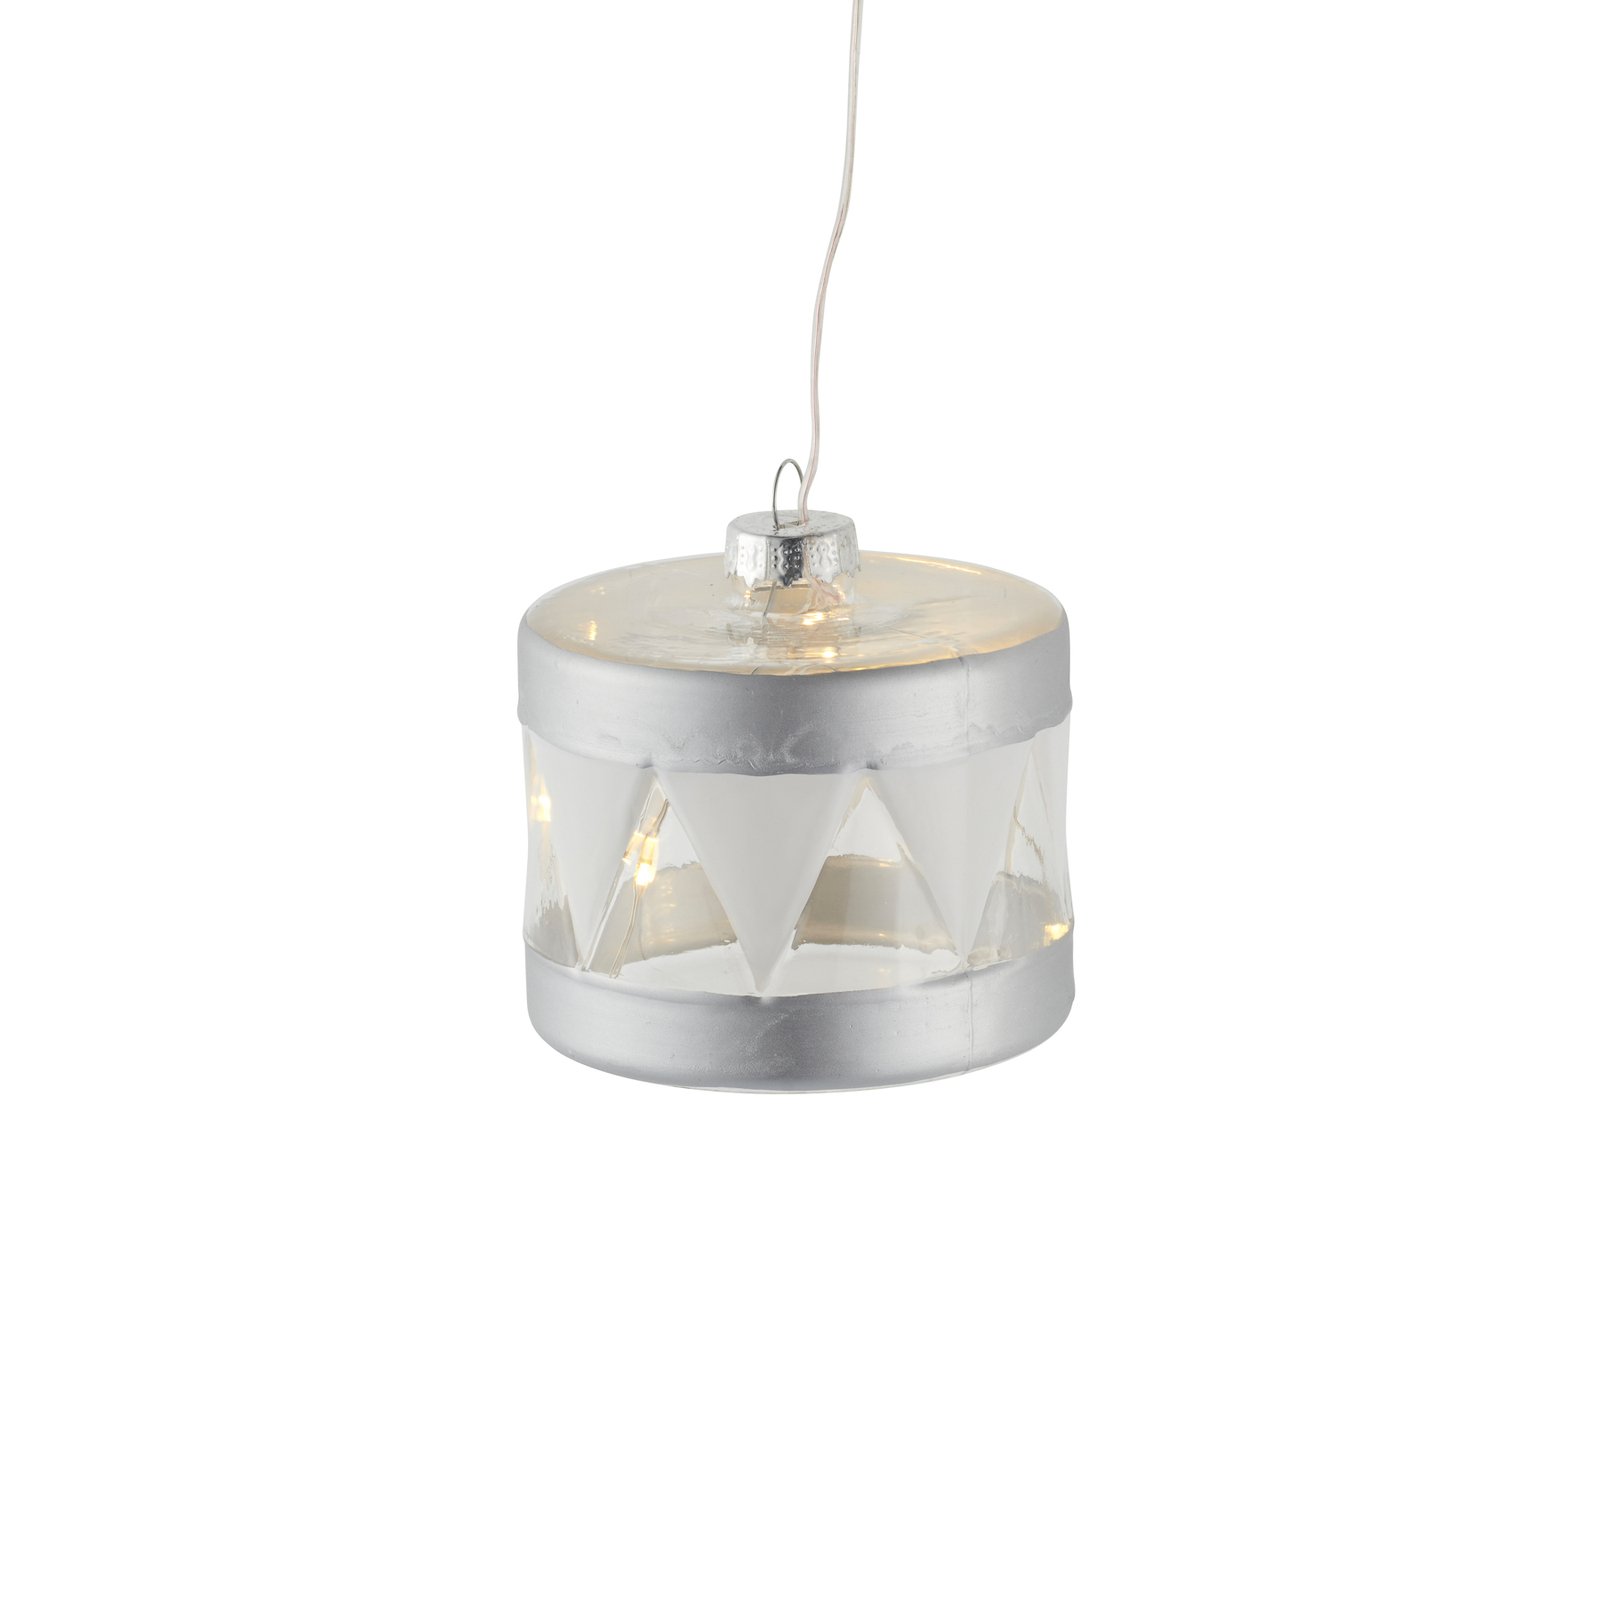 Dekorační přívěsek Elly s LED diodou, Ø 7 cm, stříbrný